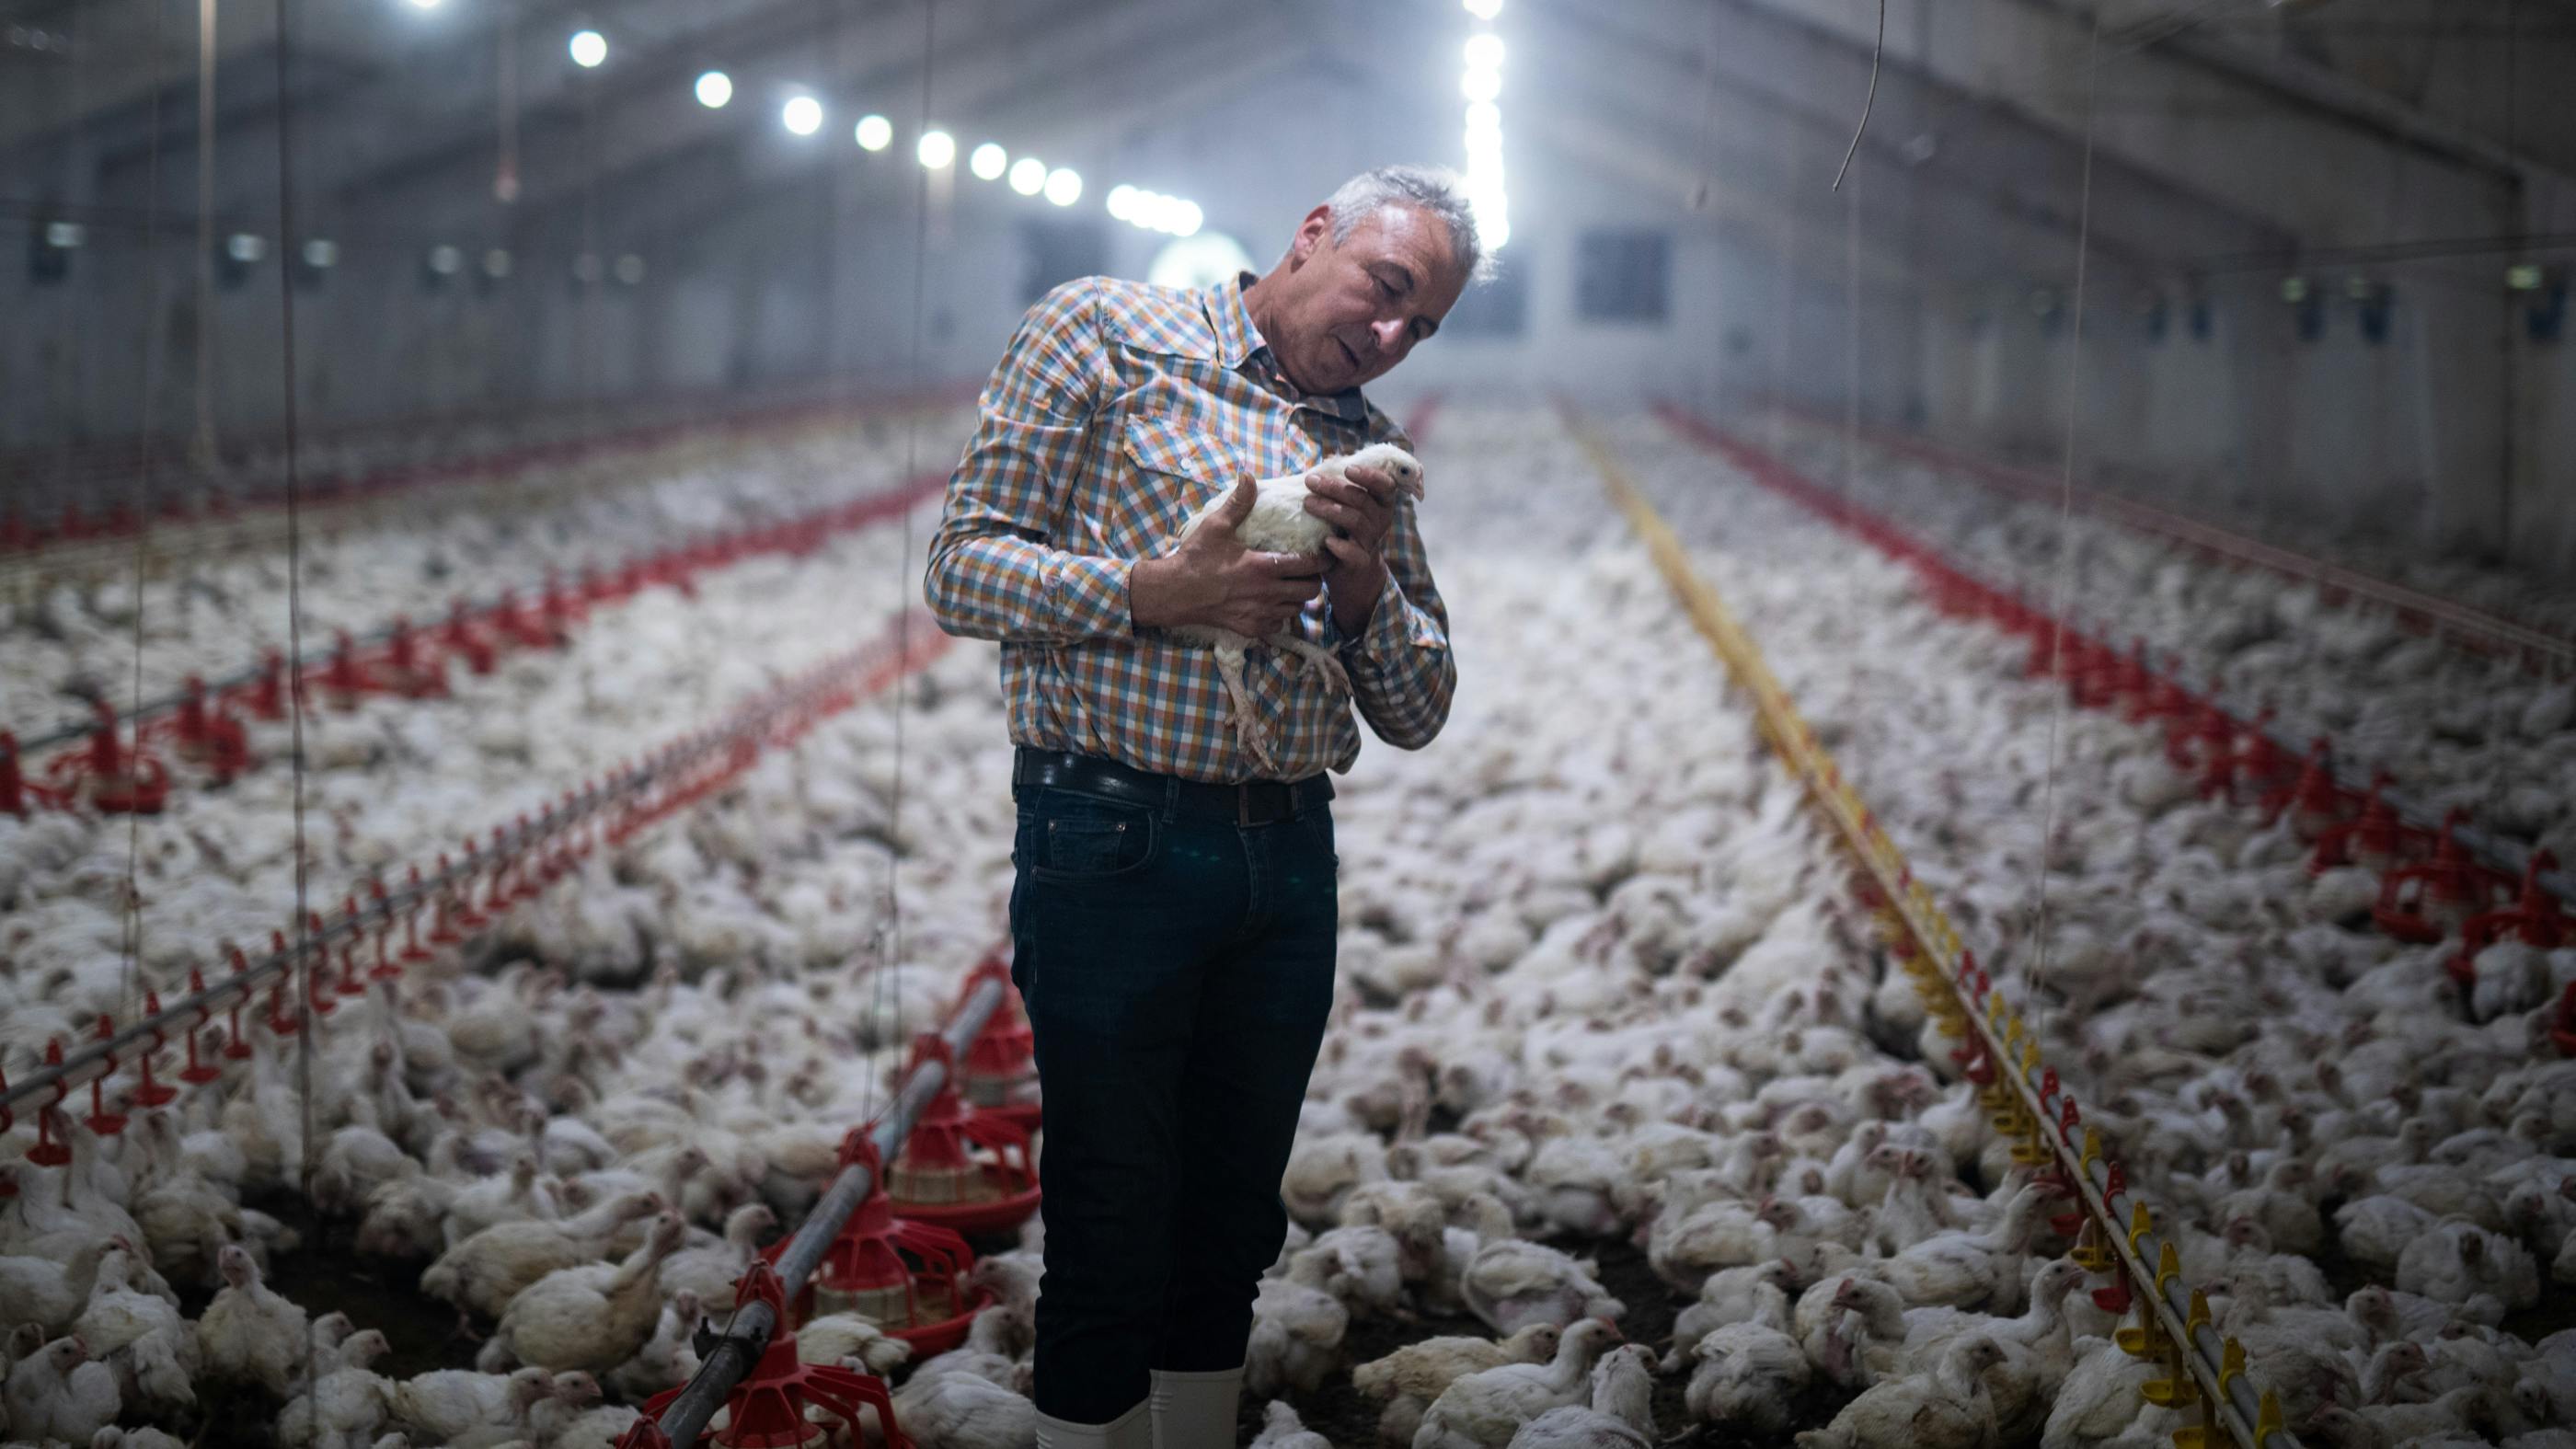 Wir sehen einen Bauern in einer Hühnerfarm, der ein Huhn begutachtet, umgeben von hunderten weiteren Hühnern 